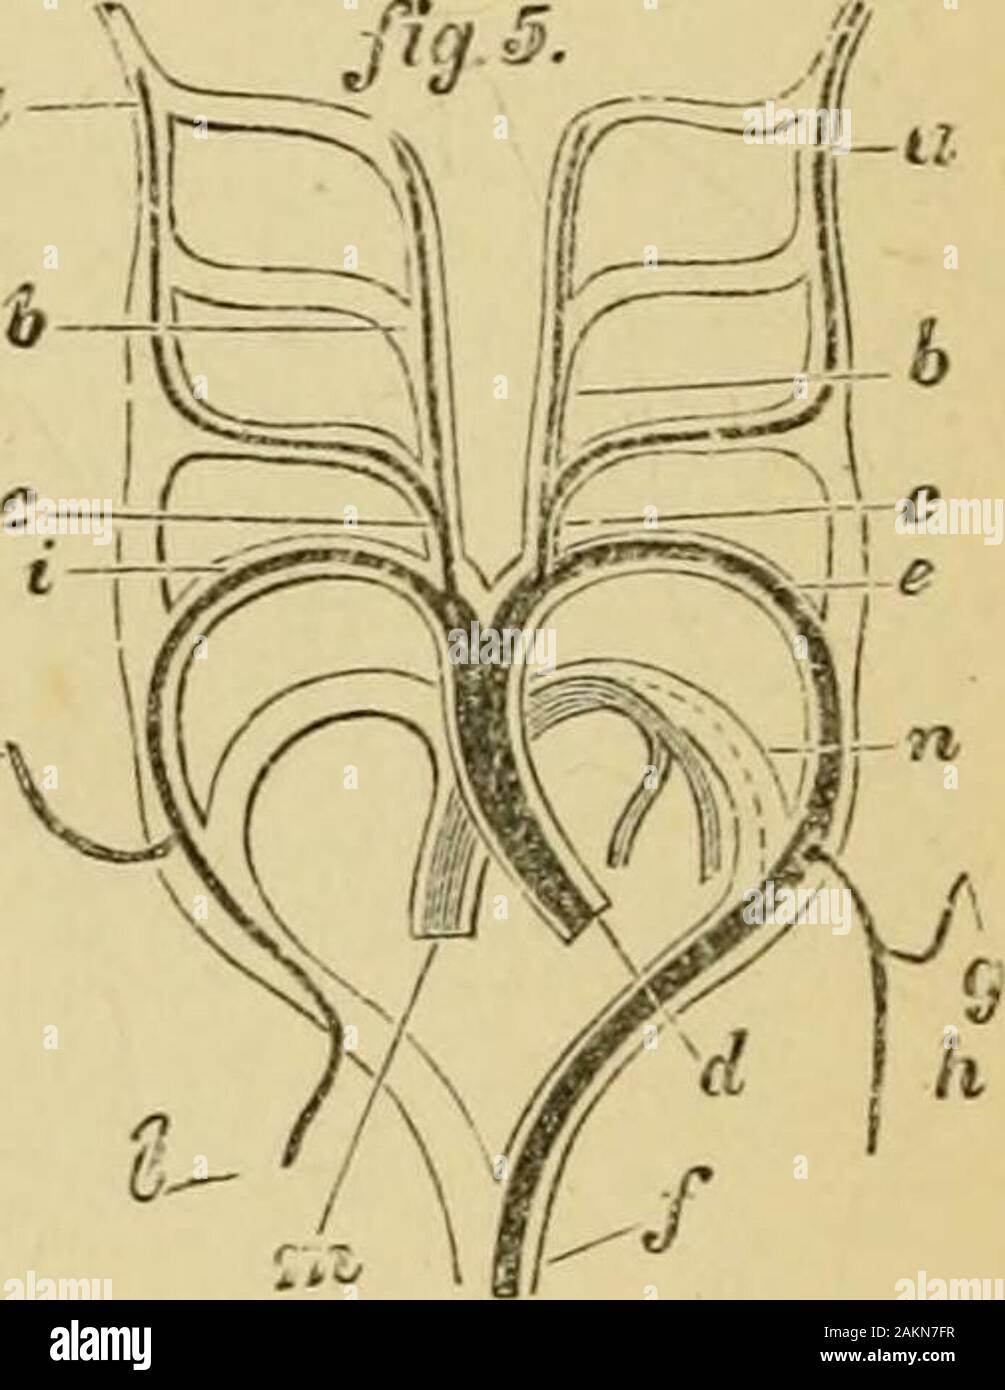 La grenouille rousse . c-- k. Fig. 87. Fig. 88. Fig. 85.-Diagramme représentant le aortc ; primitive arcs de Mammas-ropsidans et Saii (Rathkf- H. après). n, tronc commun, ou racine, de l'aorte ; /, b, les deux branches dans lesquelles elle divid- s, et qui dégagent les arches successives i, 2.3, 4 et 5, qui prennent fin en c, c, deux navires qui encore une fois s'unir pour former d, le de-scending ou nageoires dorsale, aorte. Fig. 86.-Diagramme représentant les navires et les arcs aortiques d'un lézard, avec thechanges induite sur la condition primitive (d'après H. Rathke. a, a, internalcarotids : b, b, carotides externes ; c, c, c jmmon Banque D'Images